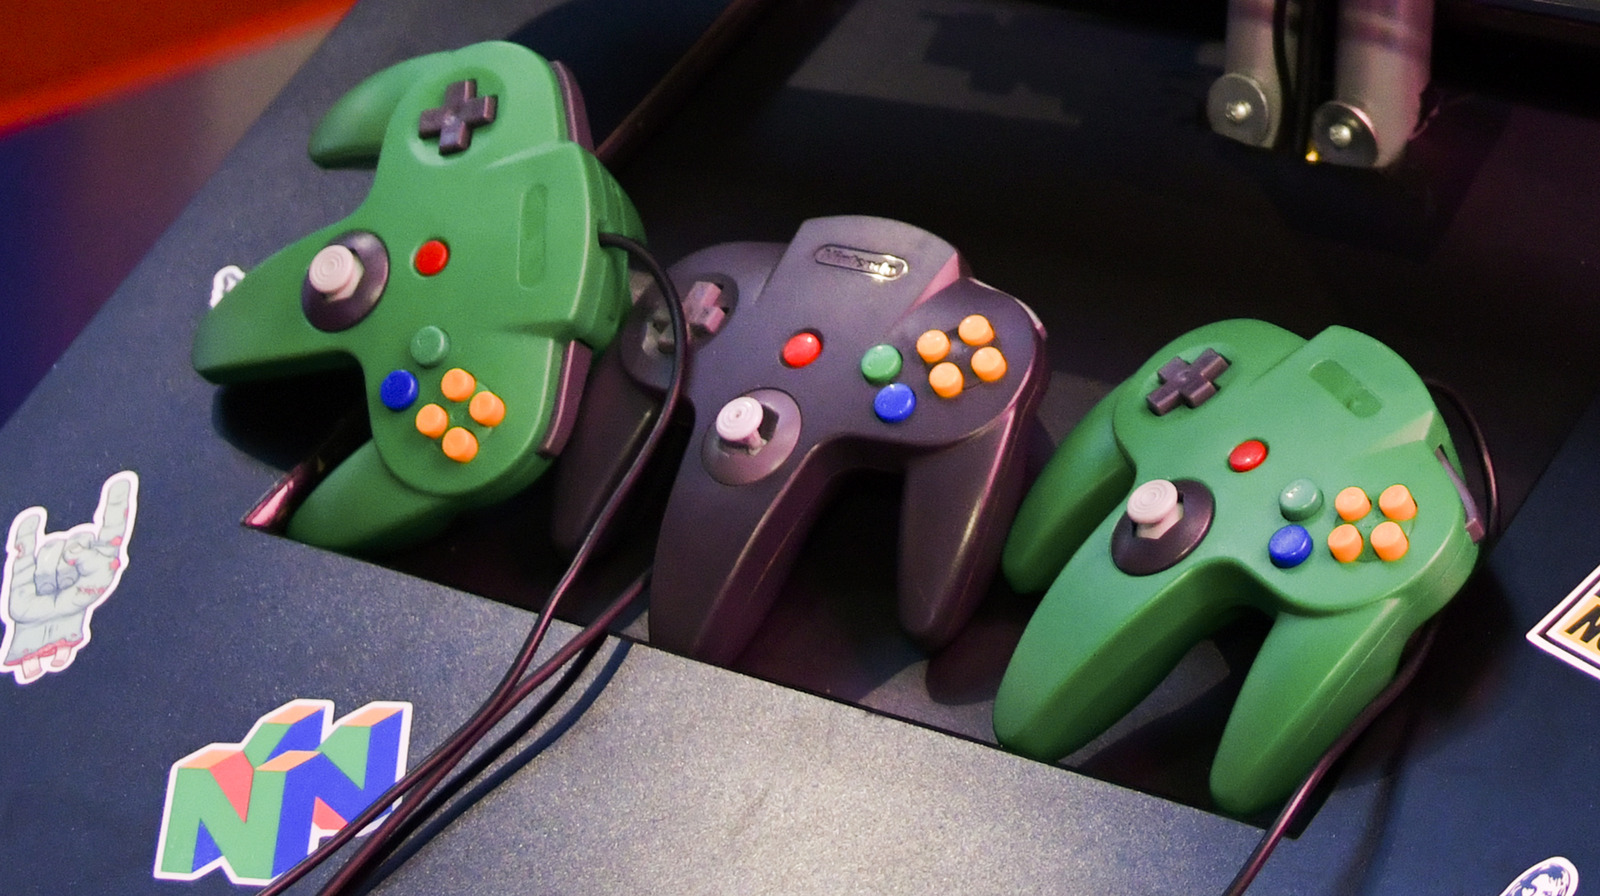 Nintendo 64 controller